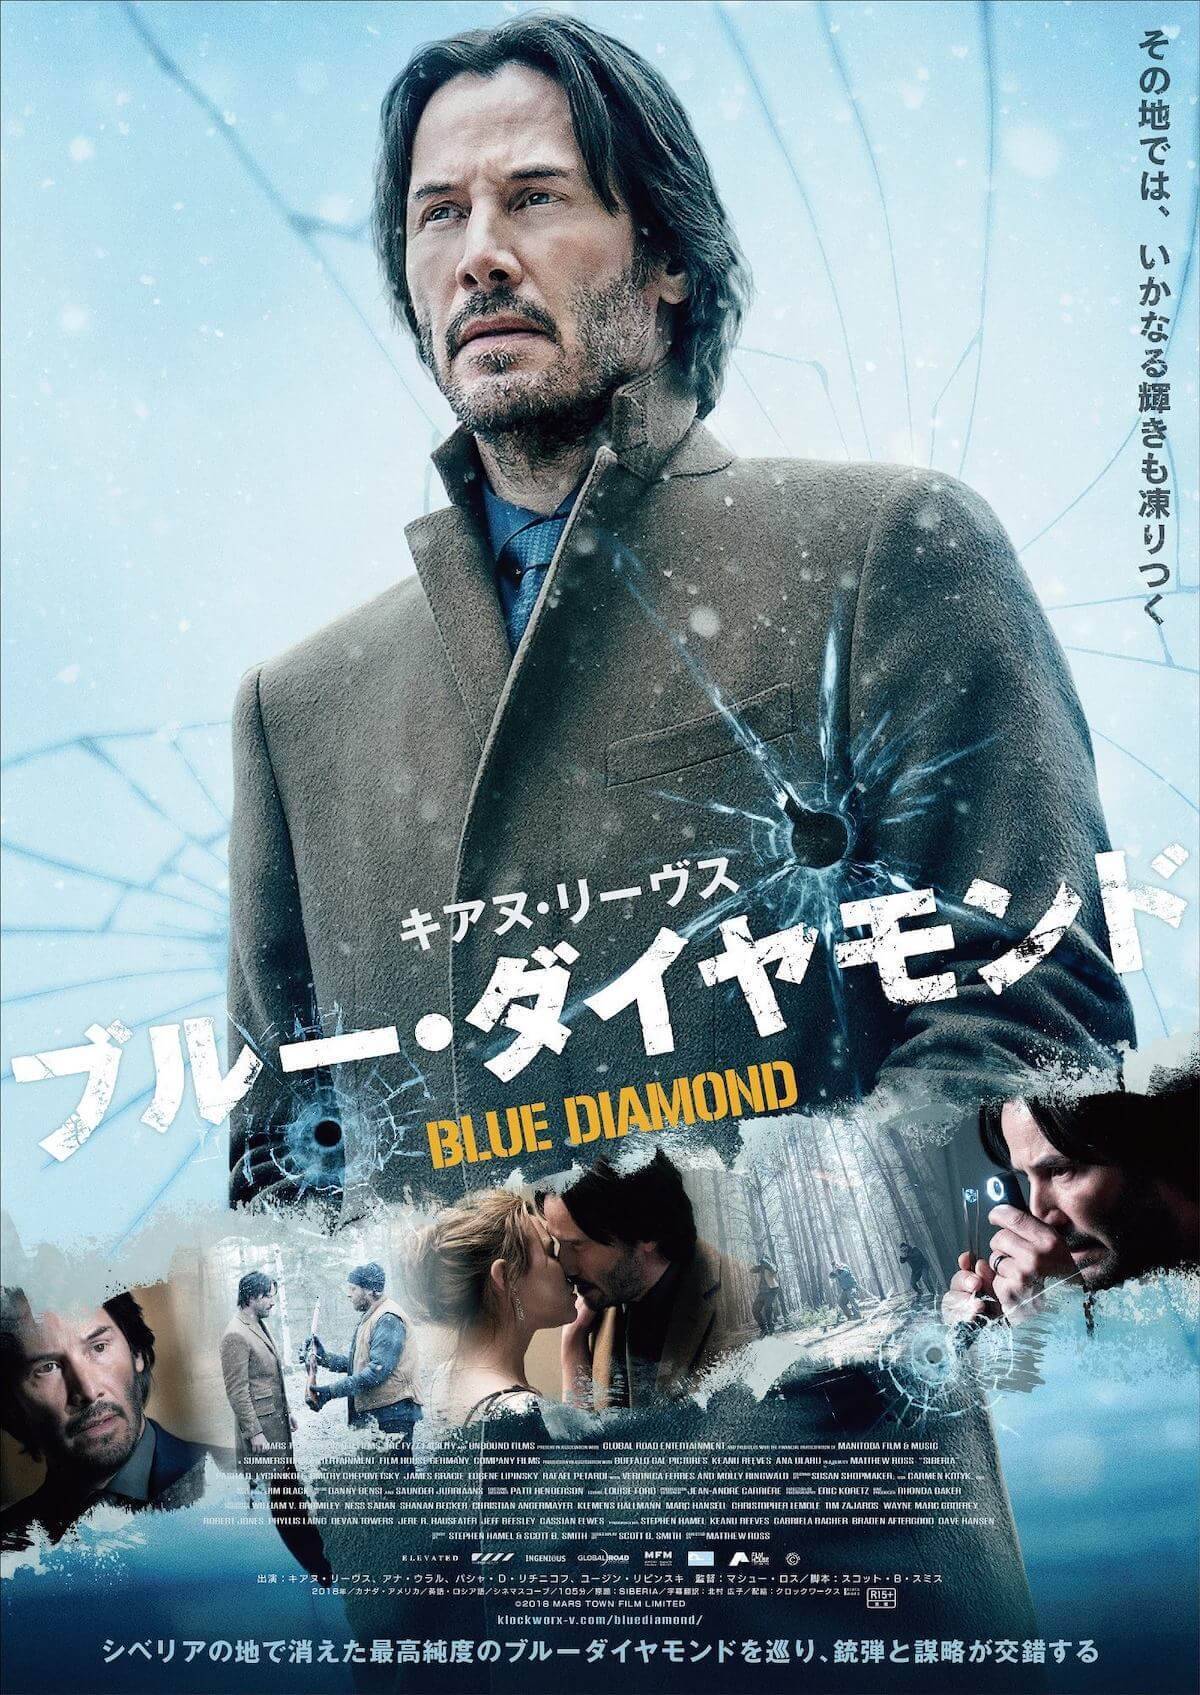 キアヌ リーヴス主演映画 ブルー ダイヤモンド が8月30日に日本公開決定 予告 ポスターも解禁 19年5月8日 エキサイトニュース